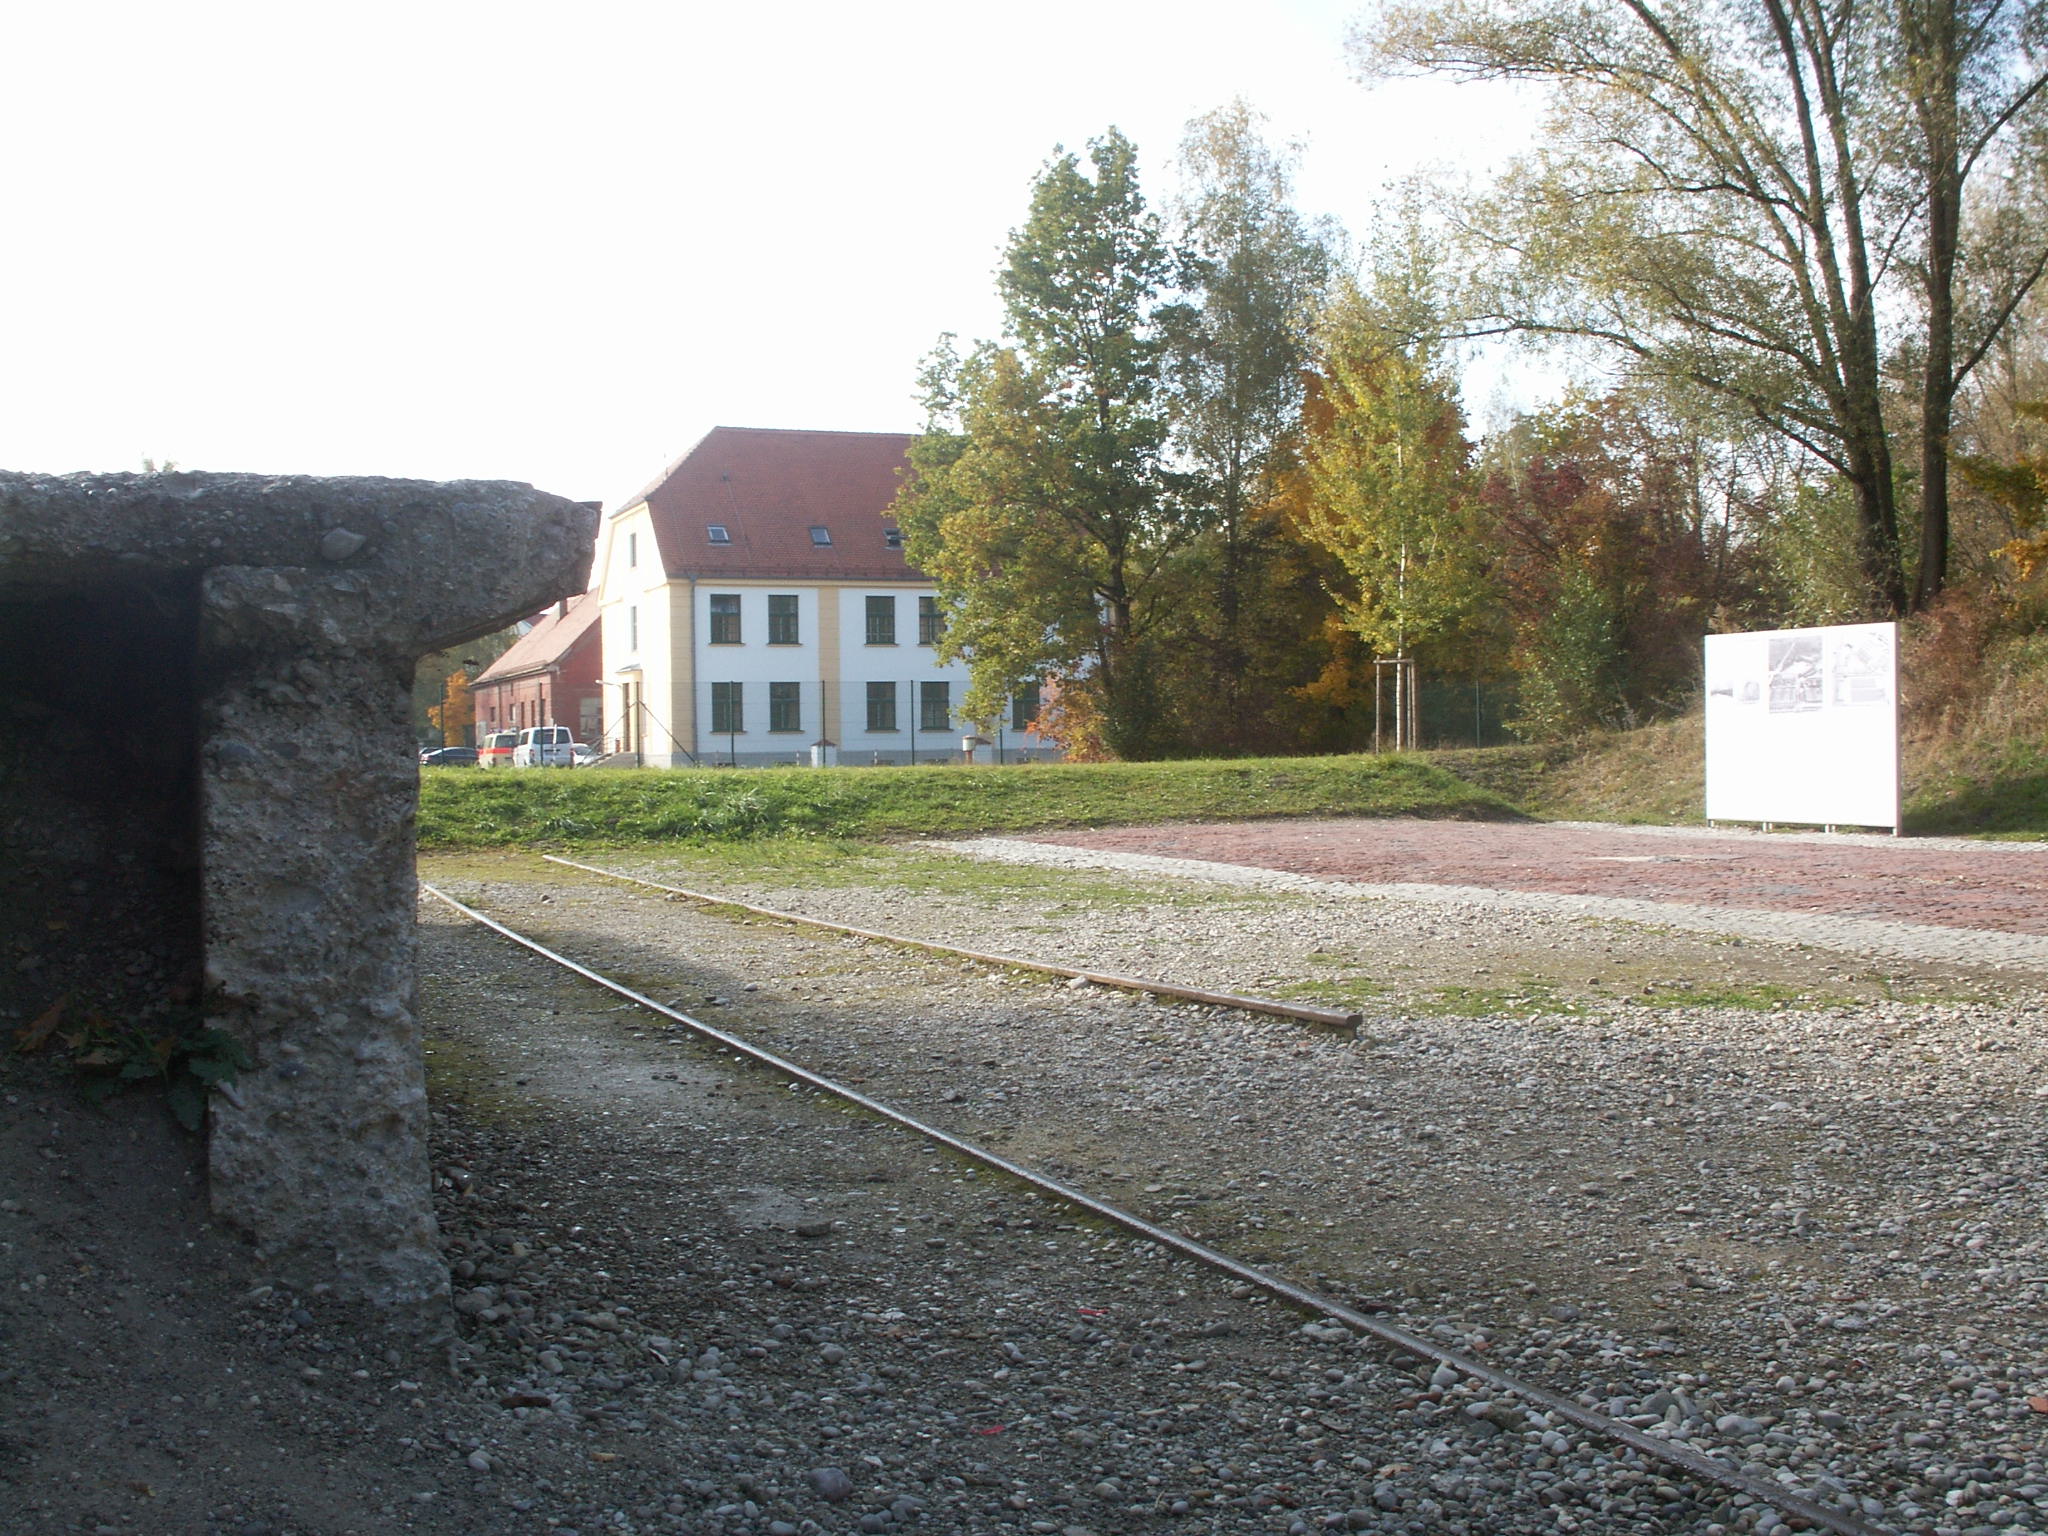 Blick auf das Kommandatur-Gebäude des Konzentrationslagers Dachau, in dem Fritz Michael Gerlich erschossen wurde.